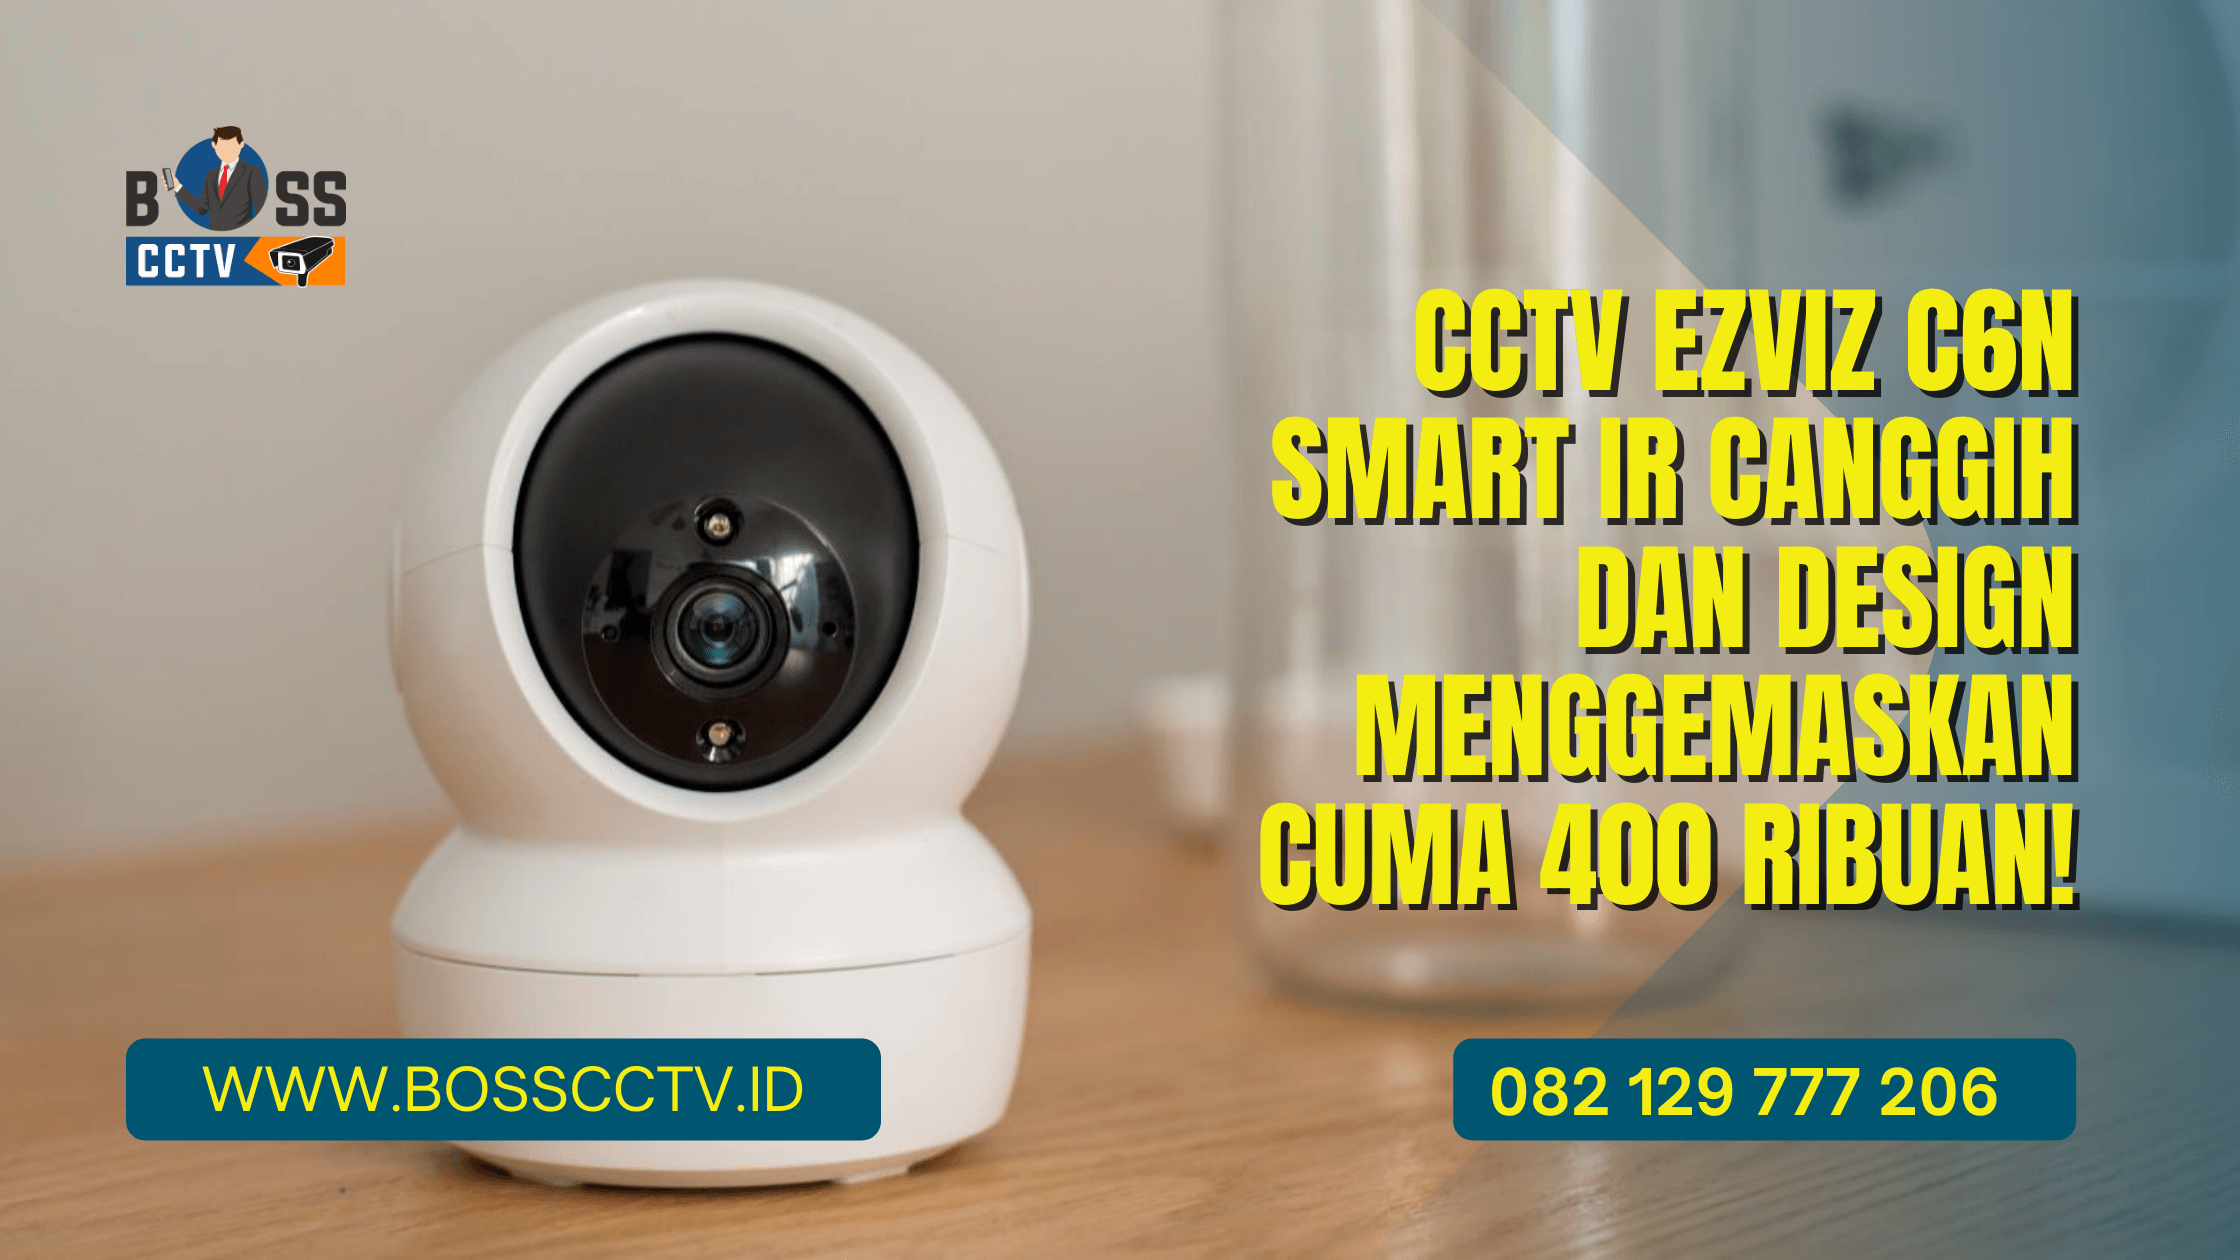 CCTV EZVIZ C6N SMART IR CANGGIH DAN DESIGN MENGGEMASKAN CUMA 400 RIBUAN